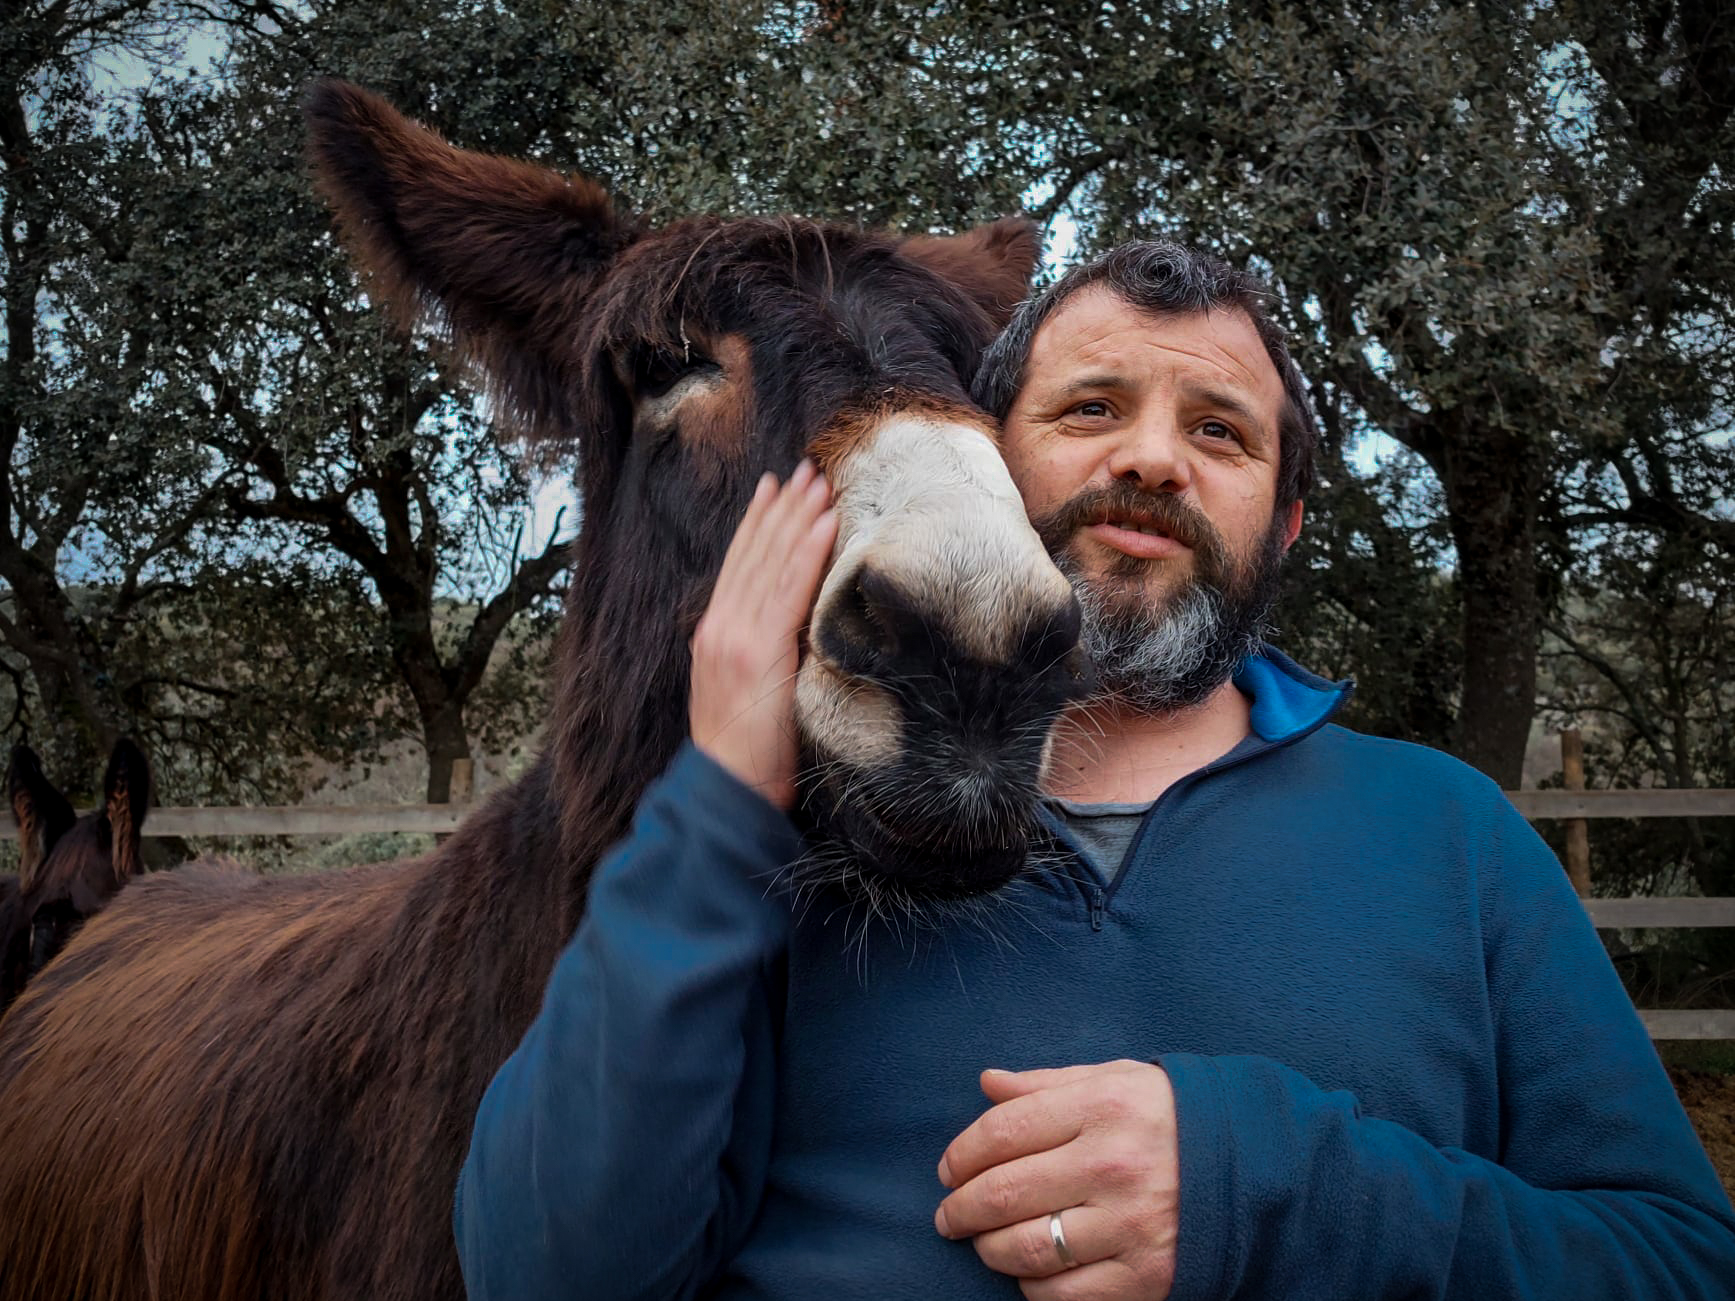 Miguel fundou a AEPGA (Associação para o Estudo e Proteção do Gado Burro), uma associação que protege a espécie Burro de Miranda, que já cuida de quase 60 burros.